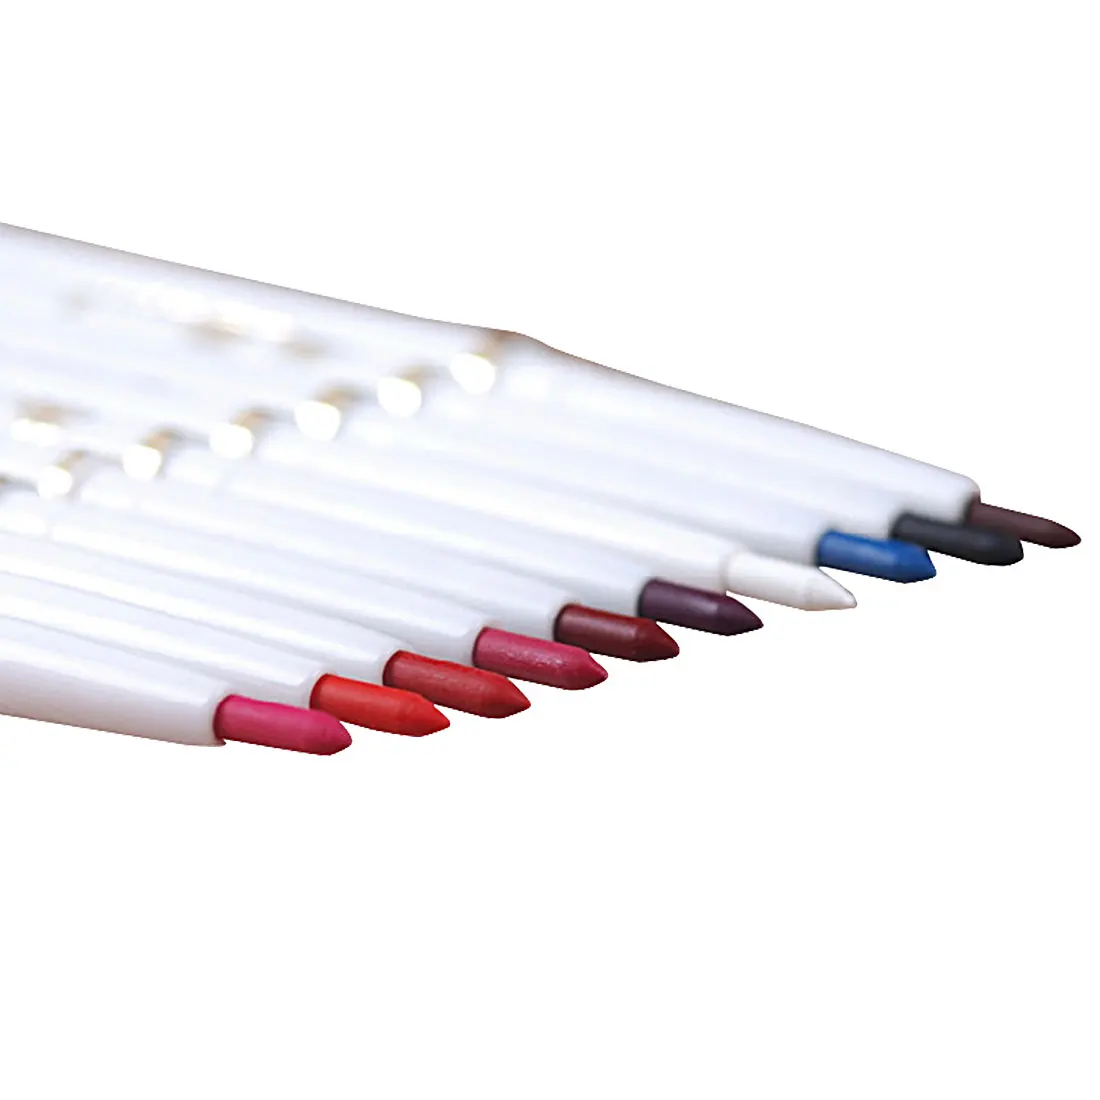 Лучшие продажи 1 шт. автоматический роторный карандаш для губ долговечный натуральный бренд макияж сексуальные продукты леди водонепроницаемый красота карандаш для губ